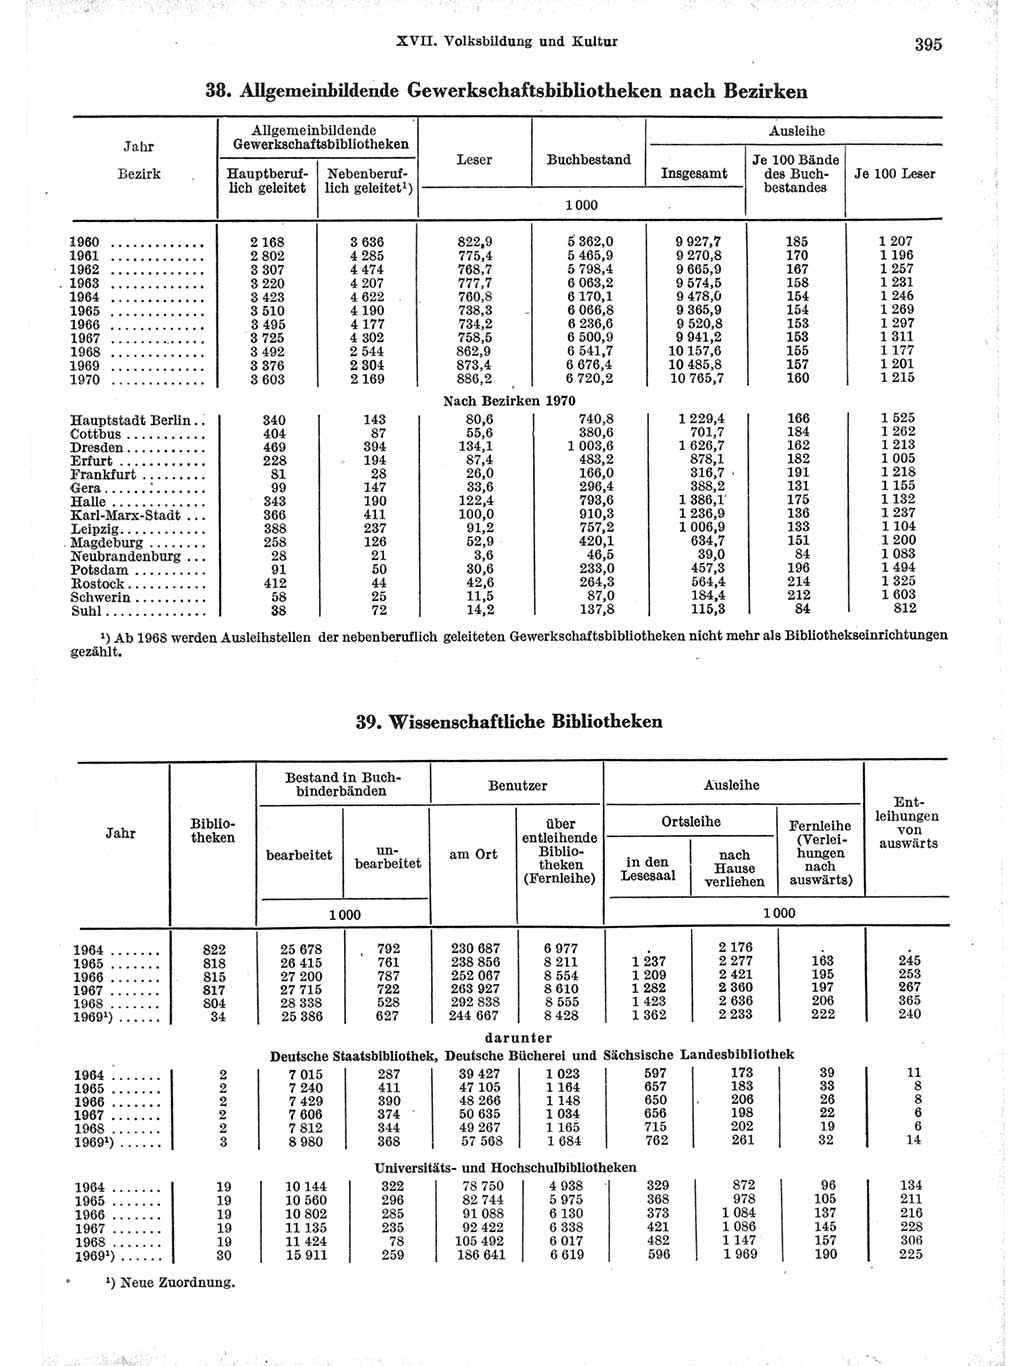 Statistisches Jahrbuch der Deutschen Demokratischen Republik (DDR) 1971, Seite 395 (Stat. Jb. DDR 1971, S. 395)